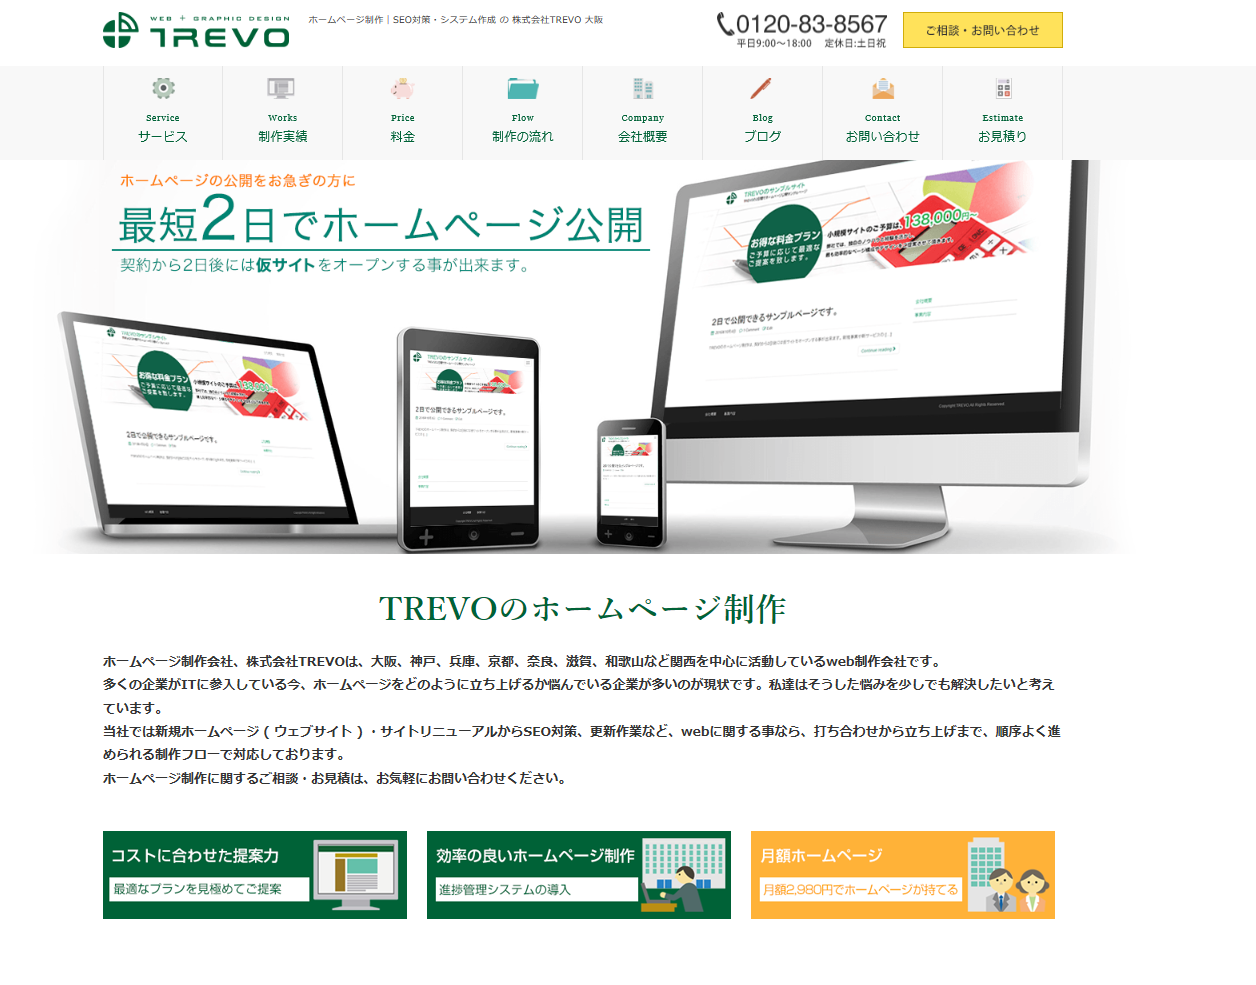 「TREVO」の公式サイト